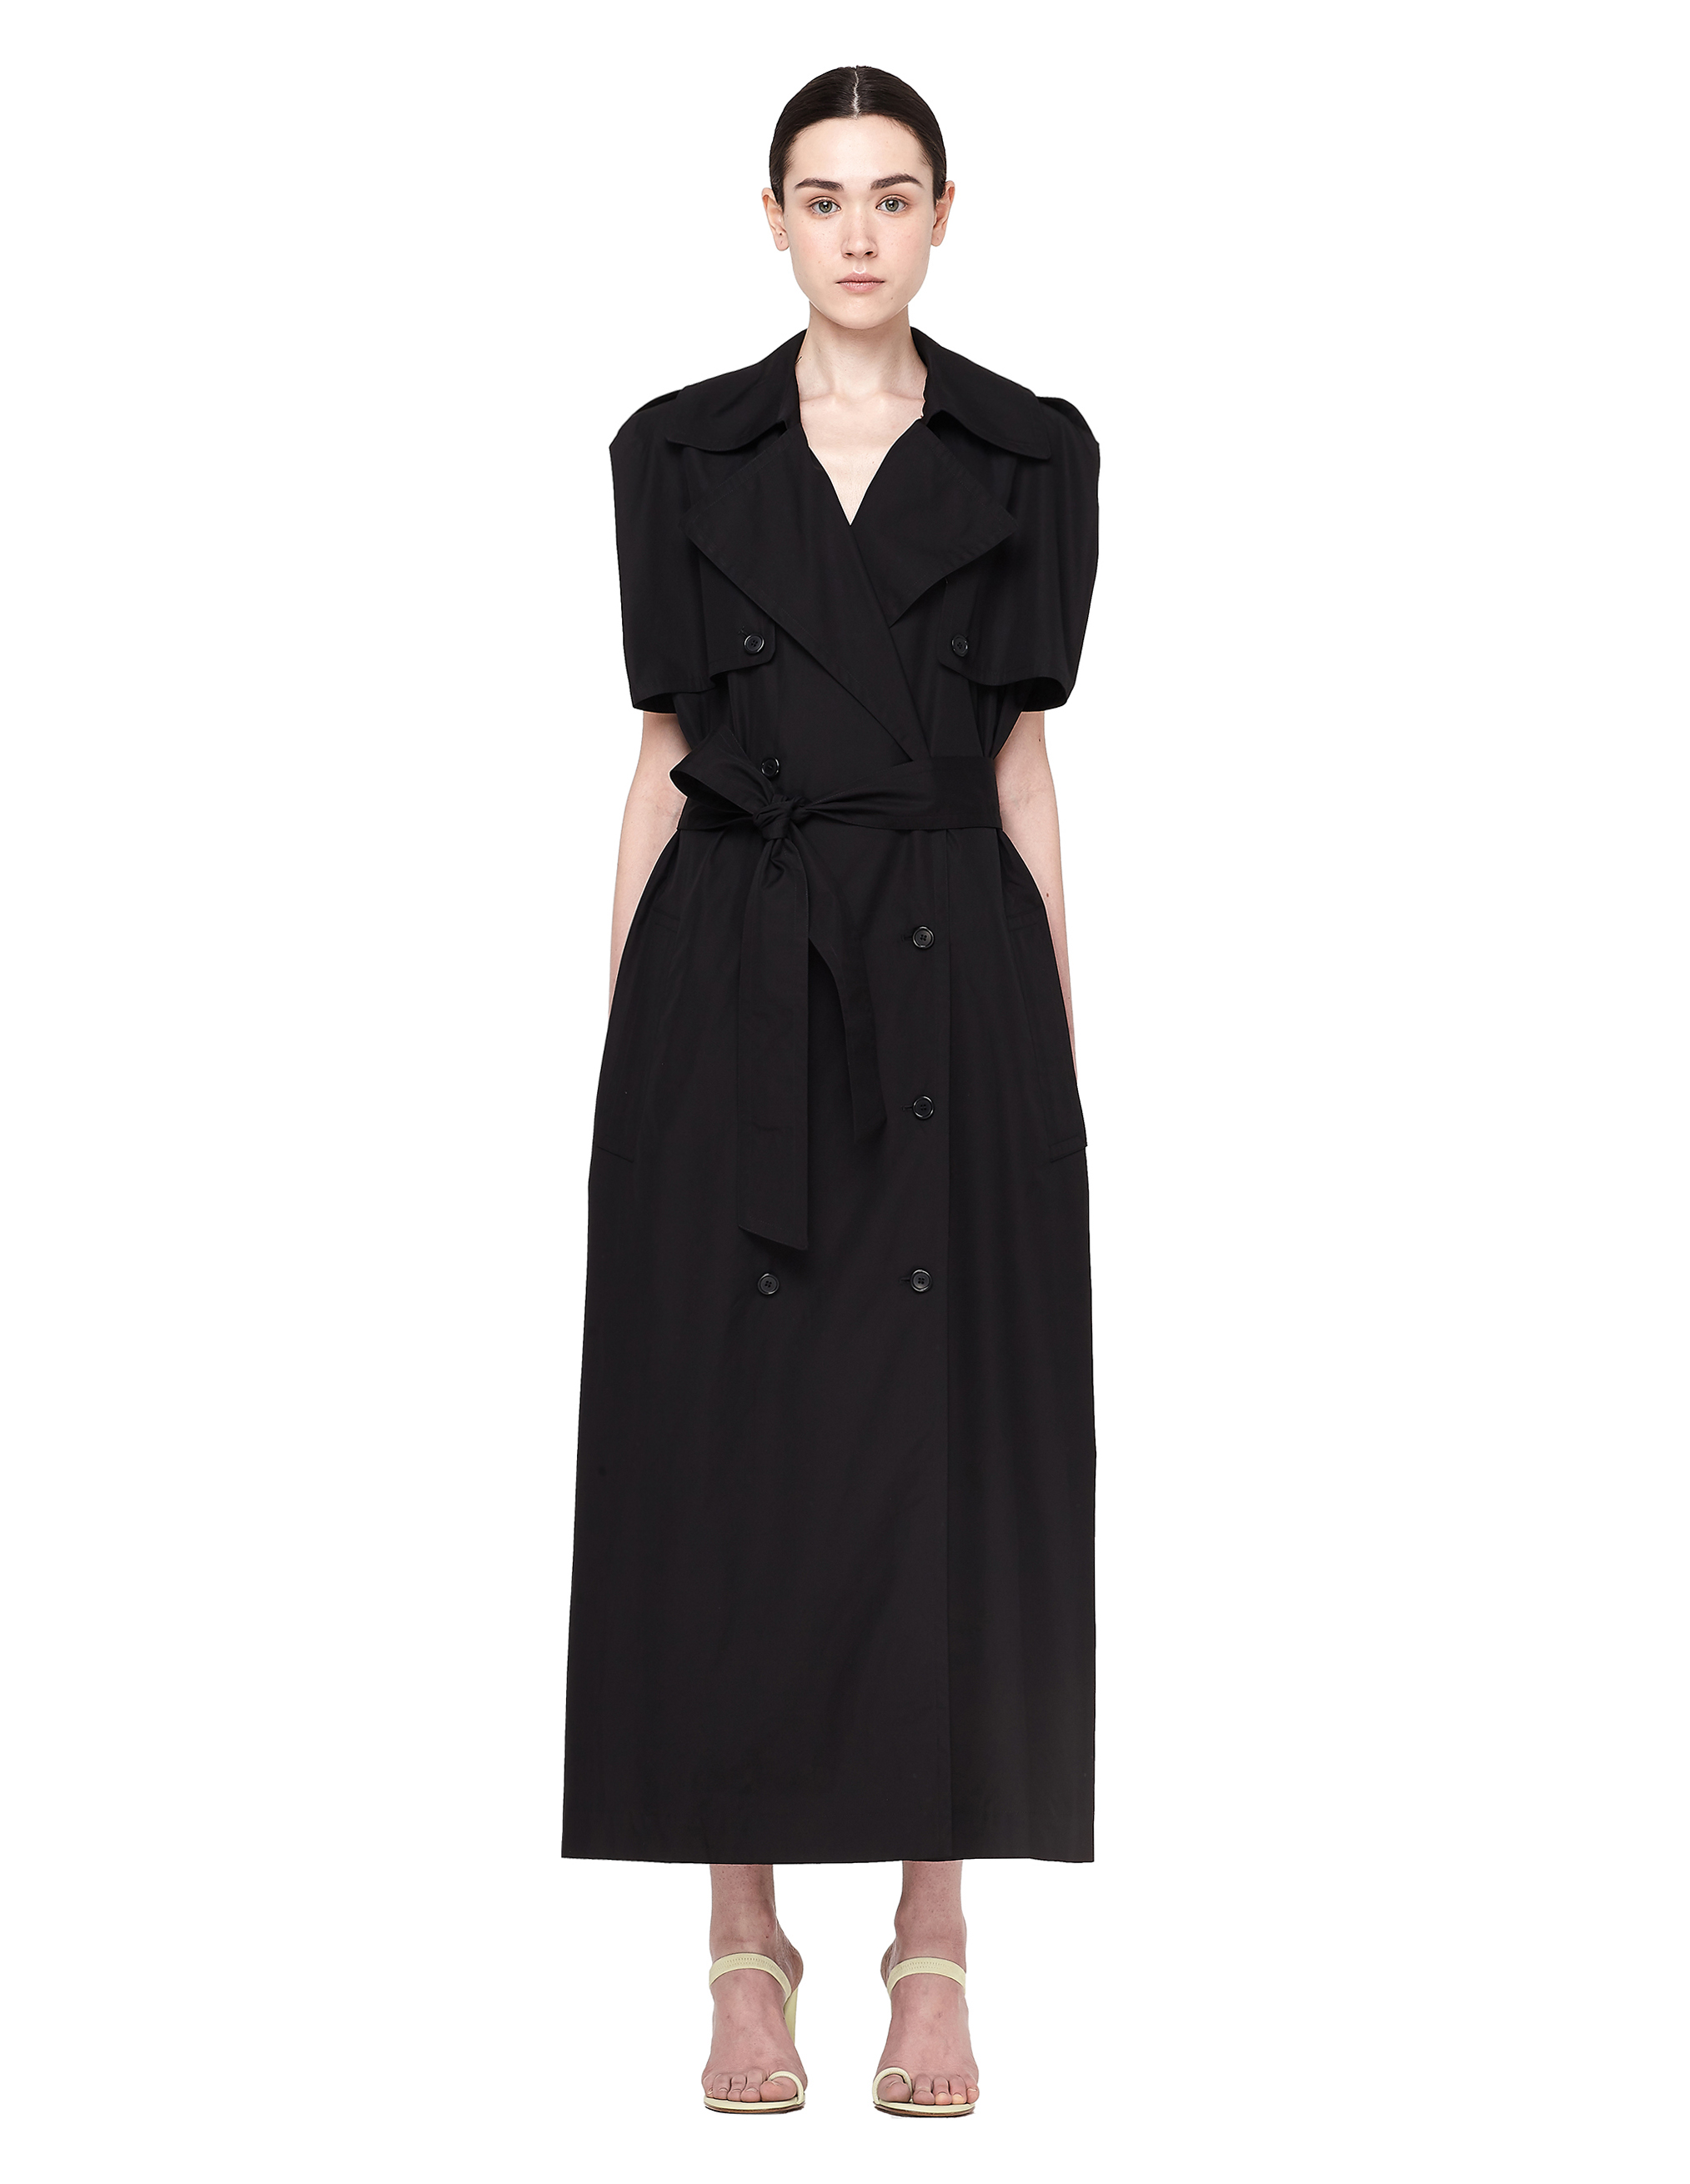 MAISON MARGIELA BLACK COTTON TRENCH DRESS,S51CT0915/900